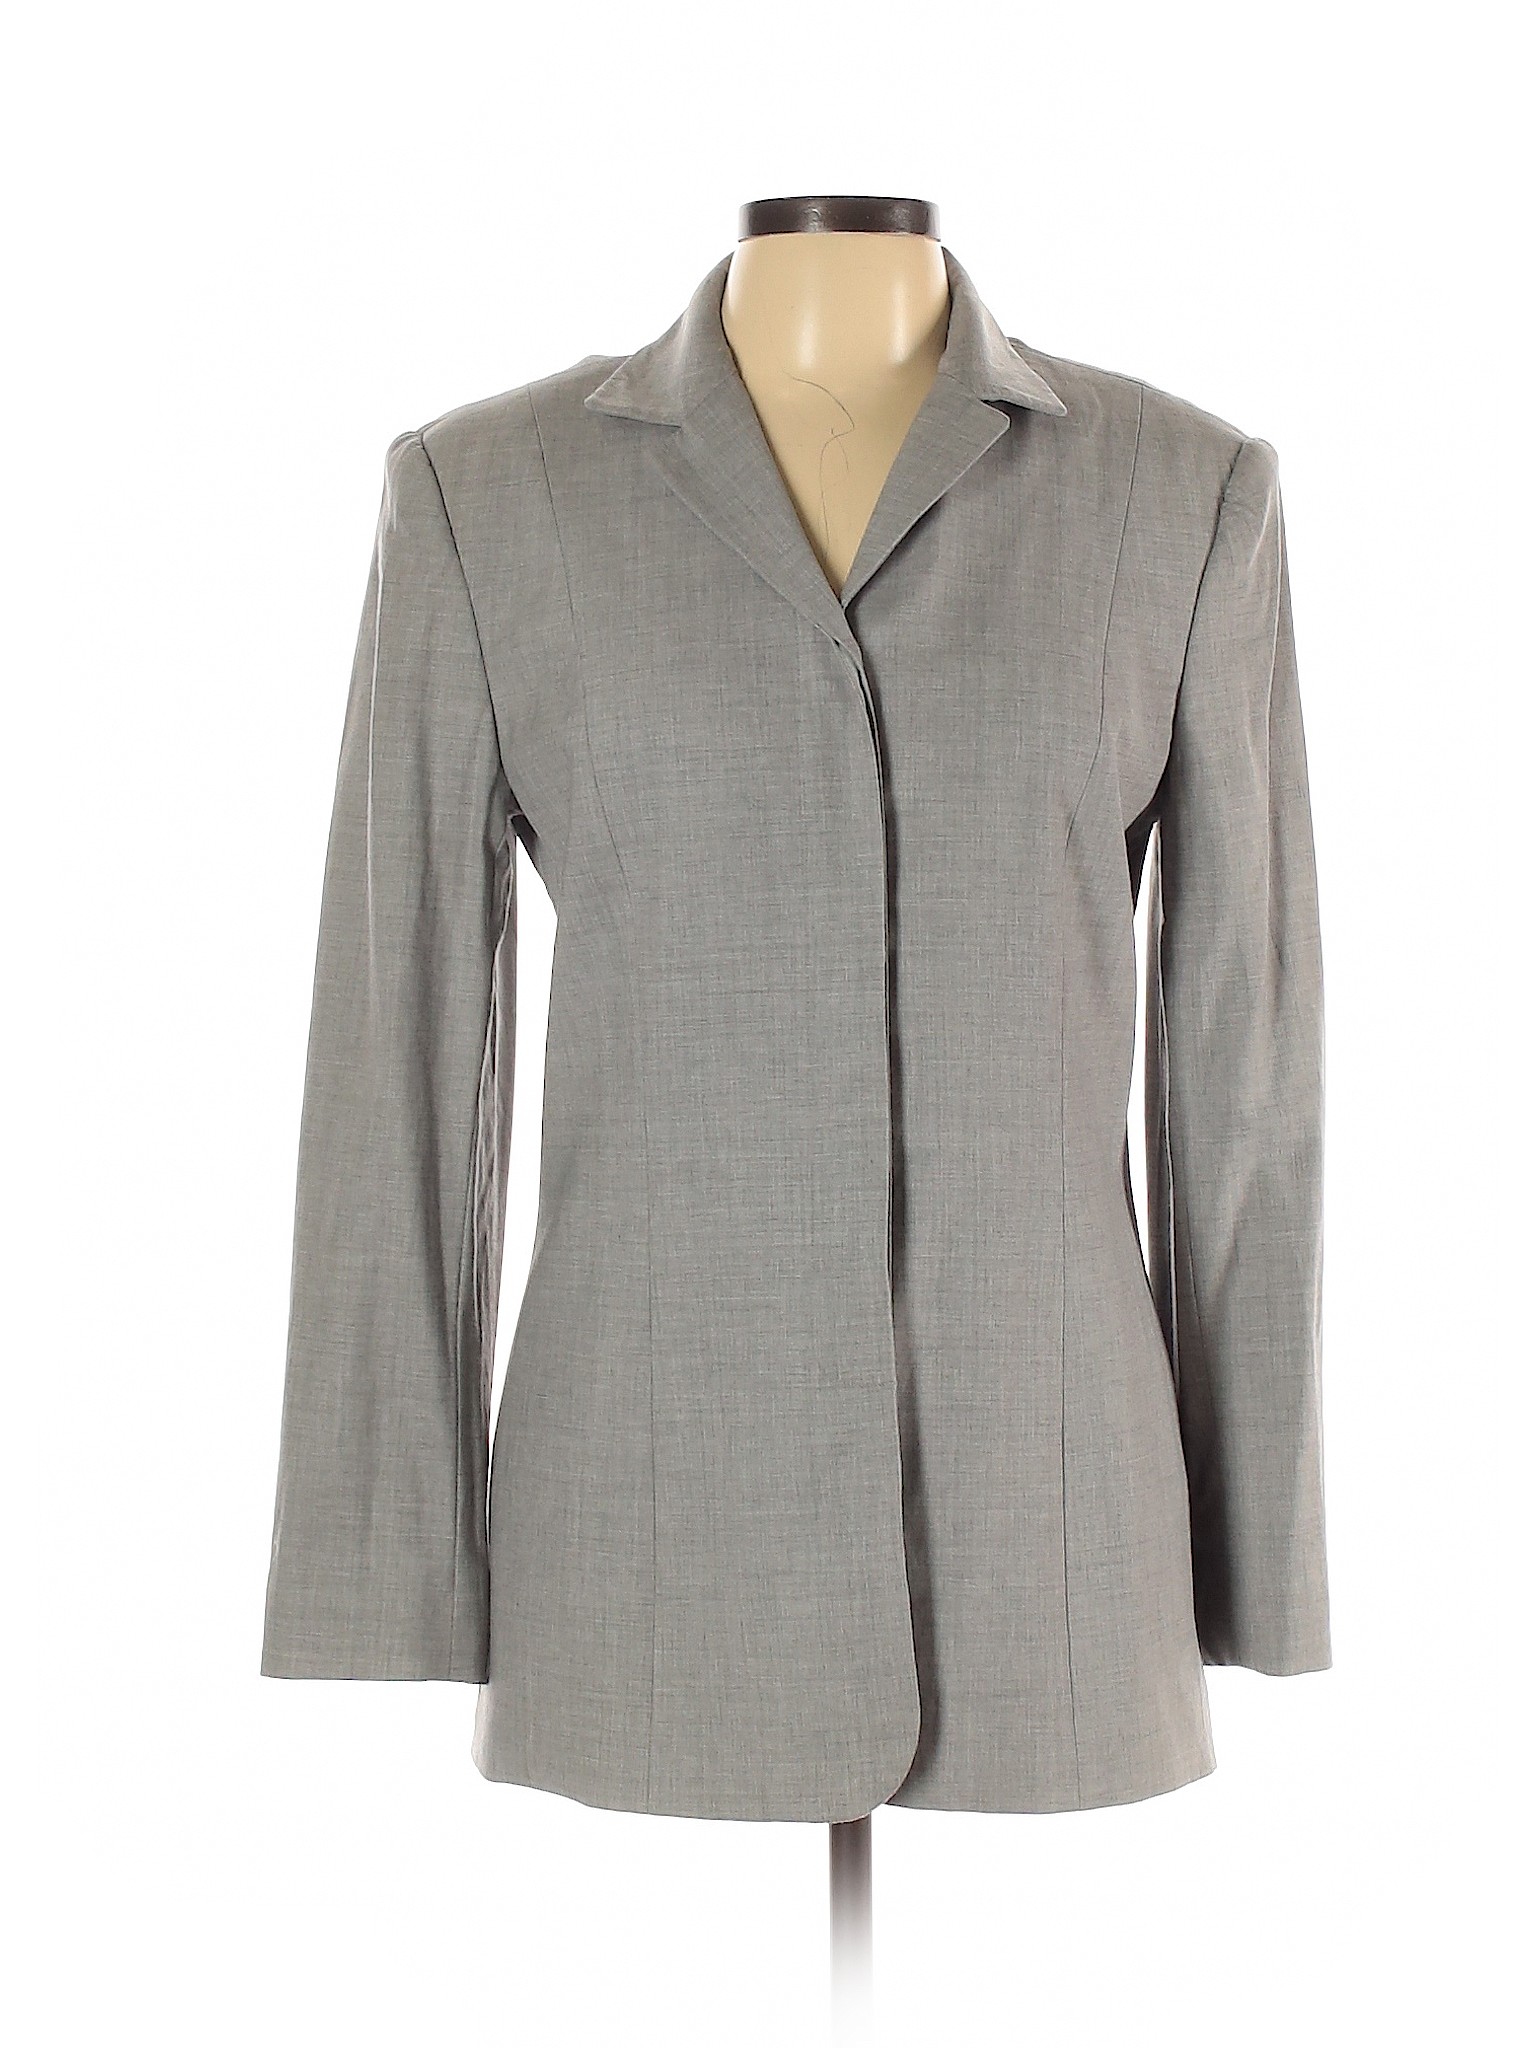 Liz Claiborne Collection Women Gray Wool Blazer 10 | eBay